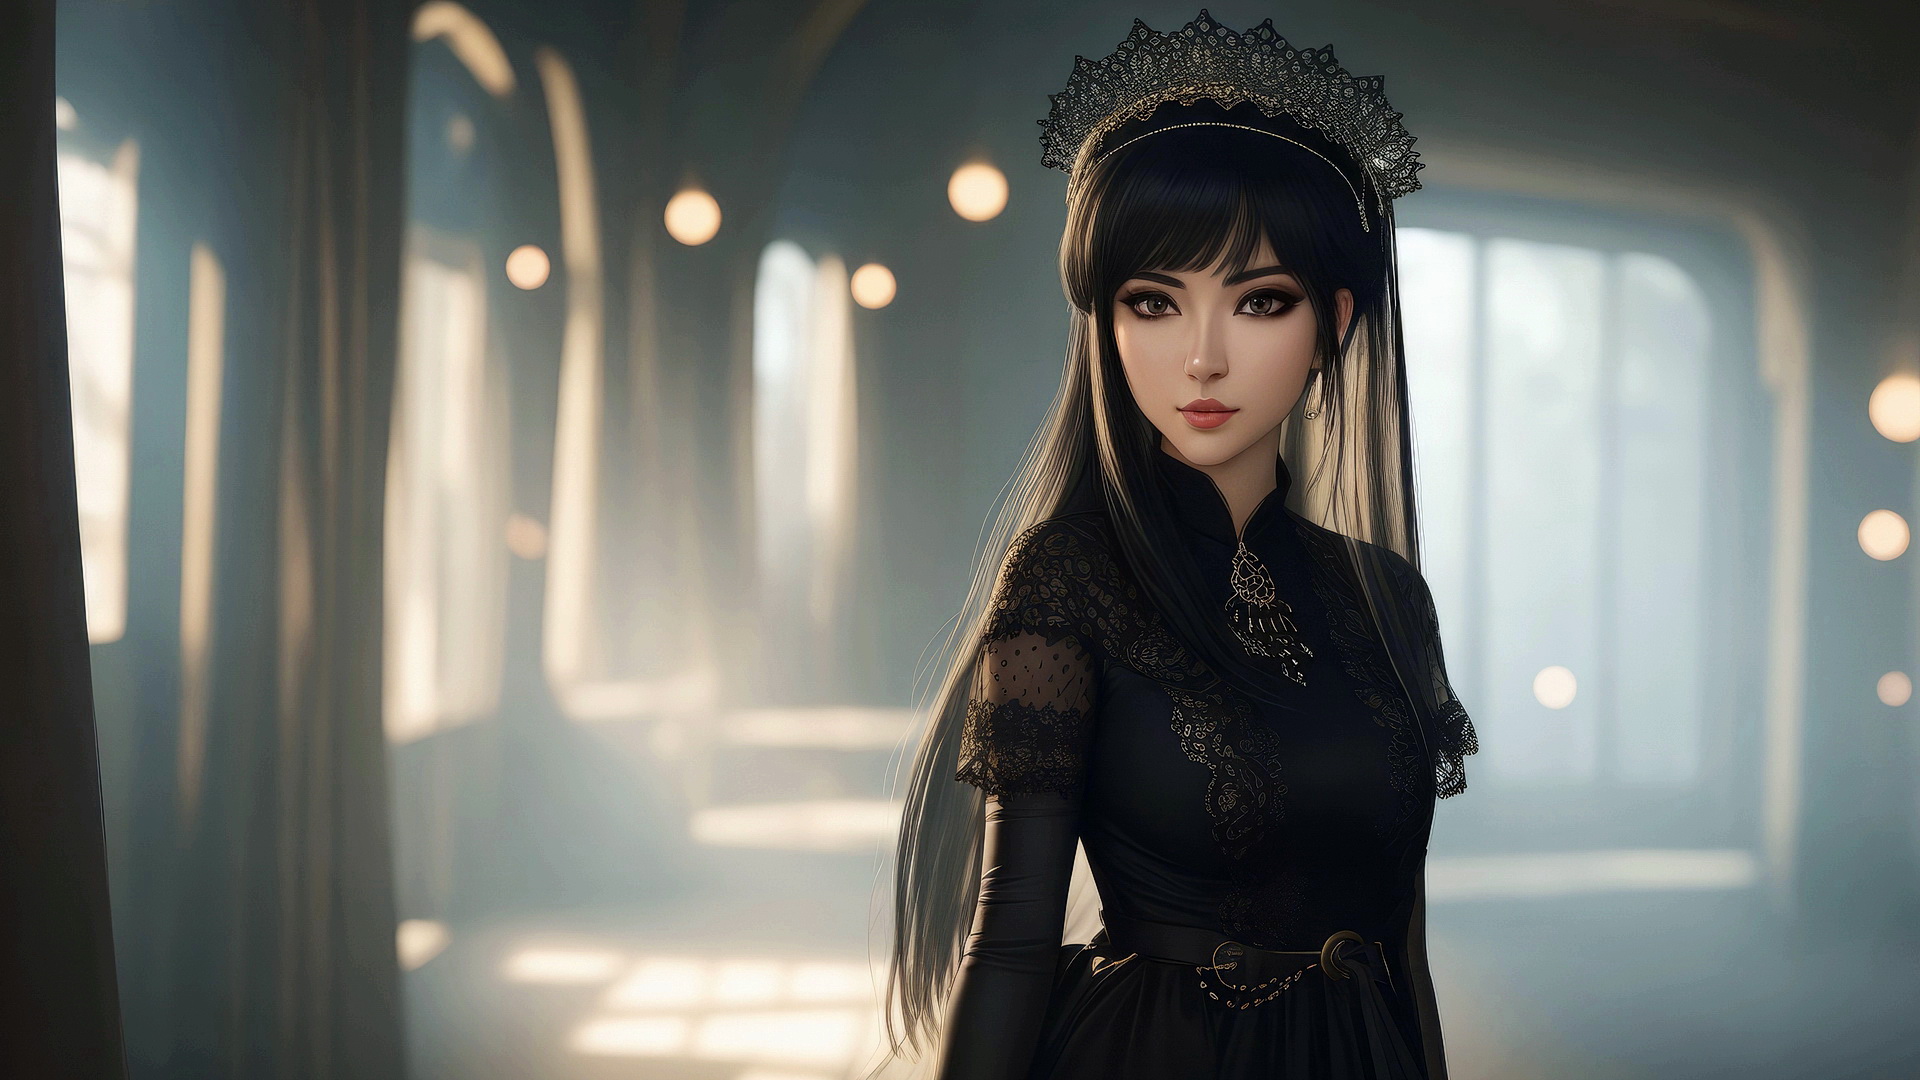 Молодая императрица стоит в холле дворца · бесплатная фотография